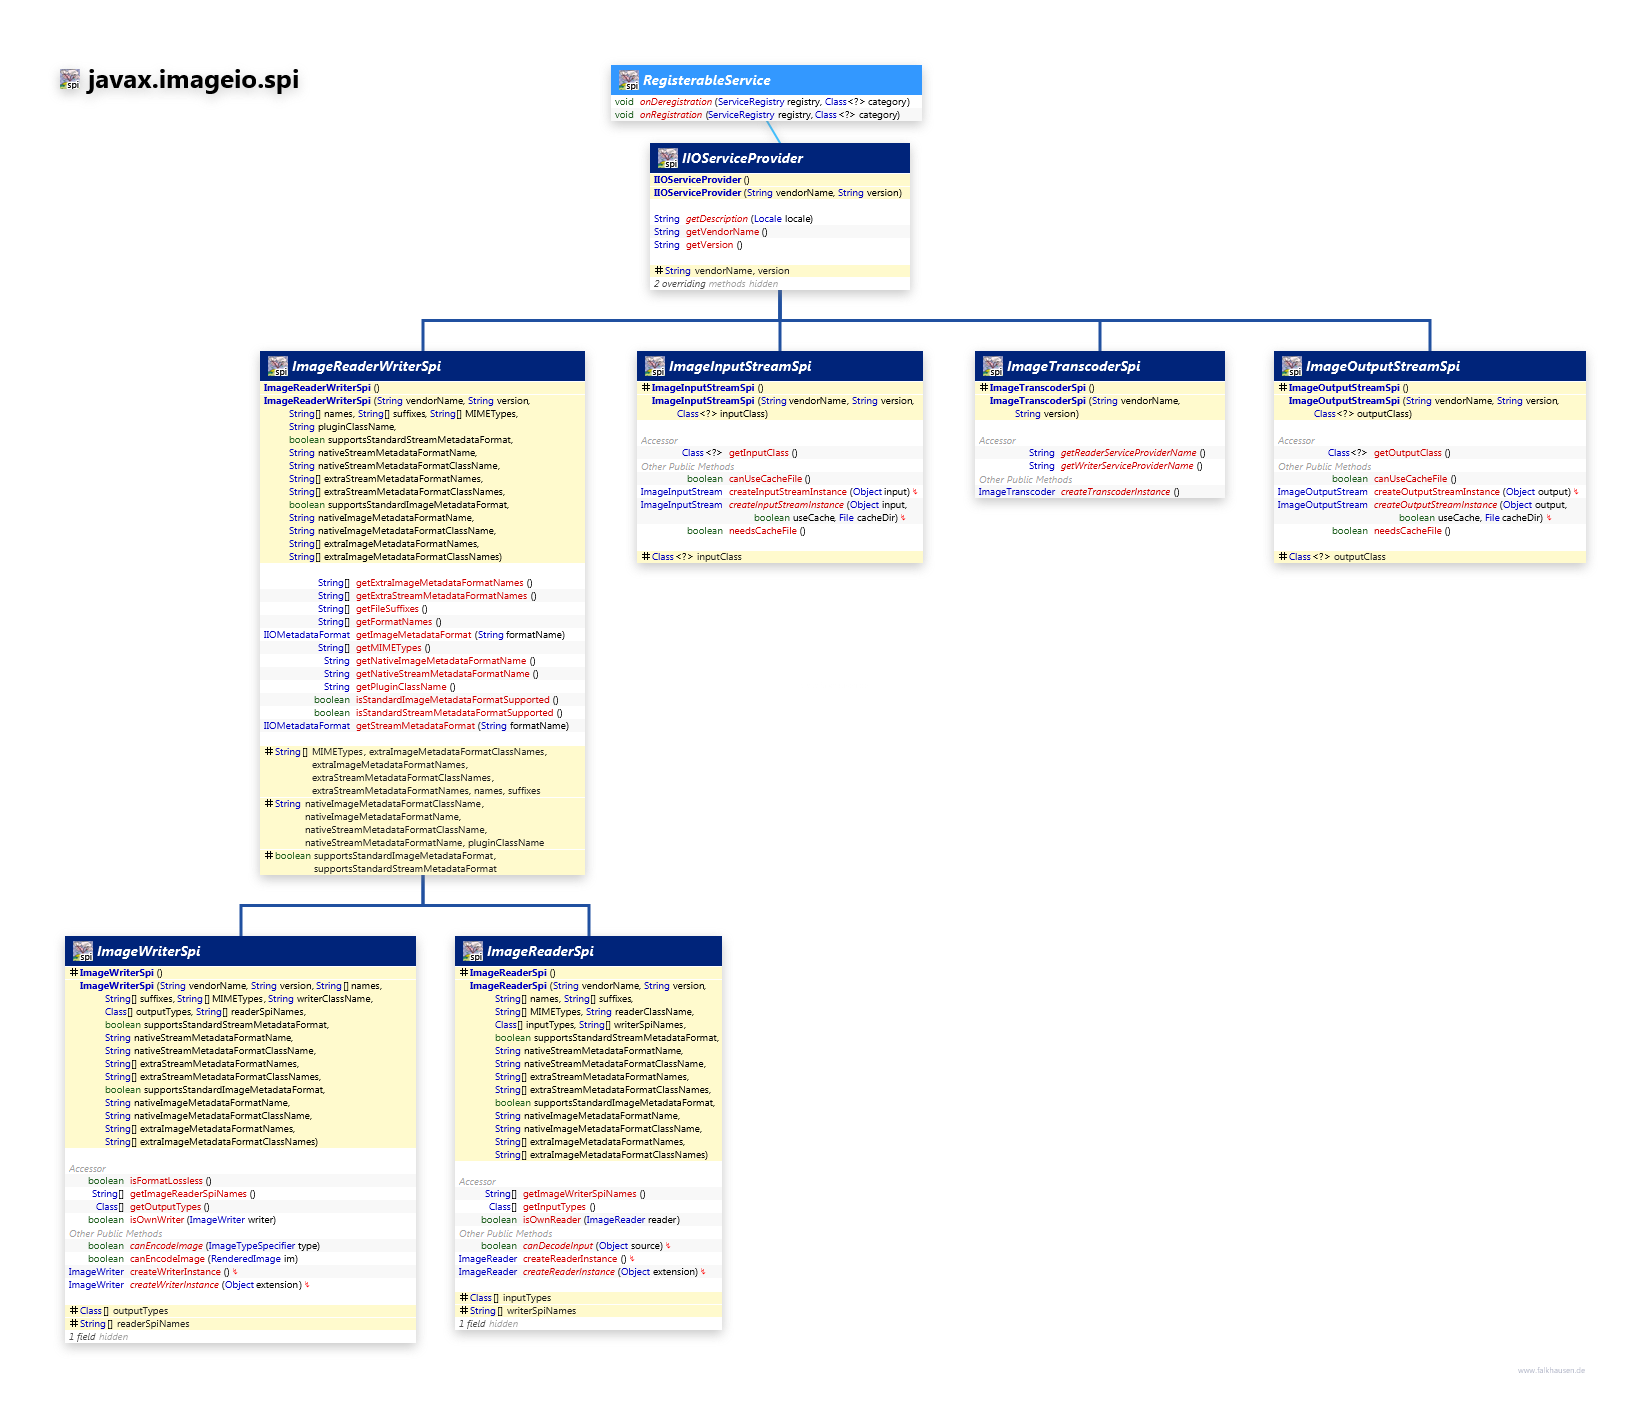 javax.imageio.spi ServiceProvider class diagram and api documentation for Java 7